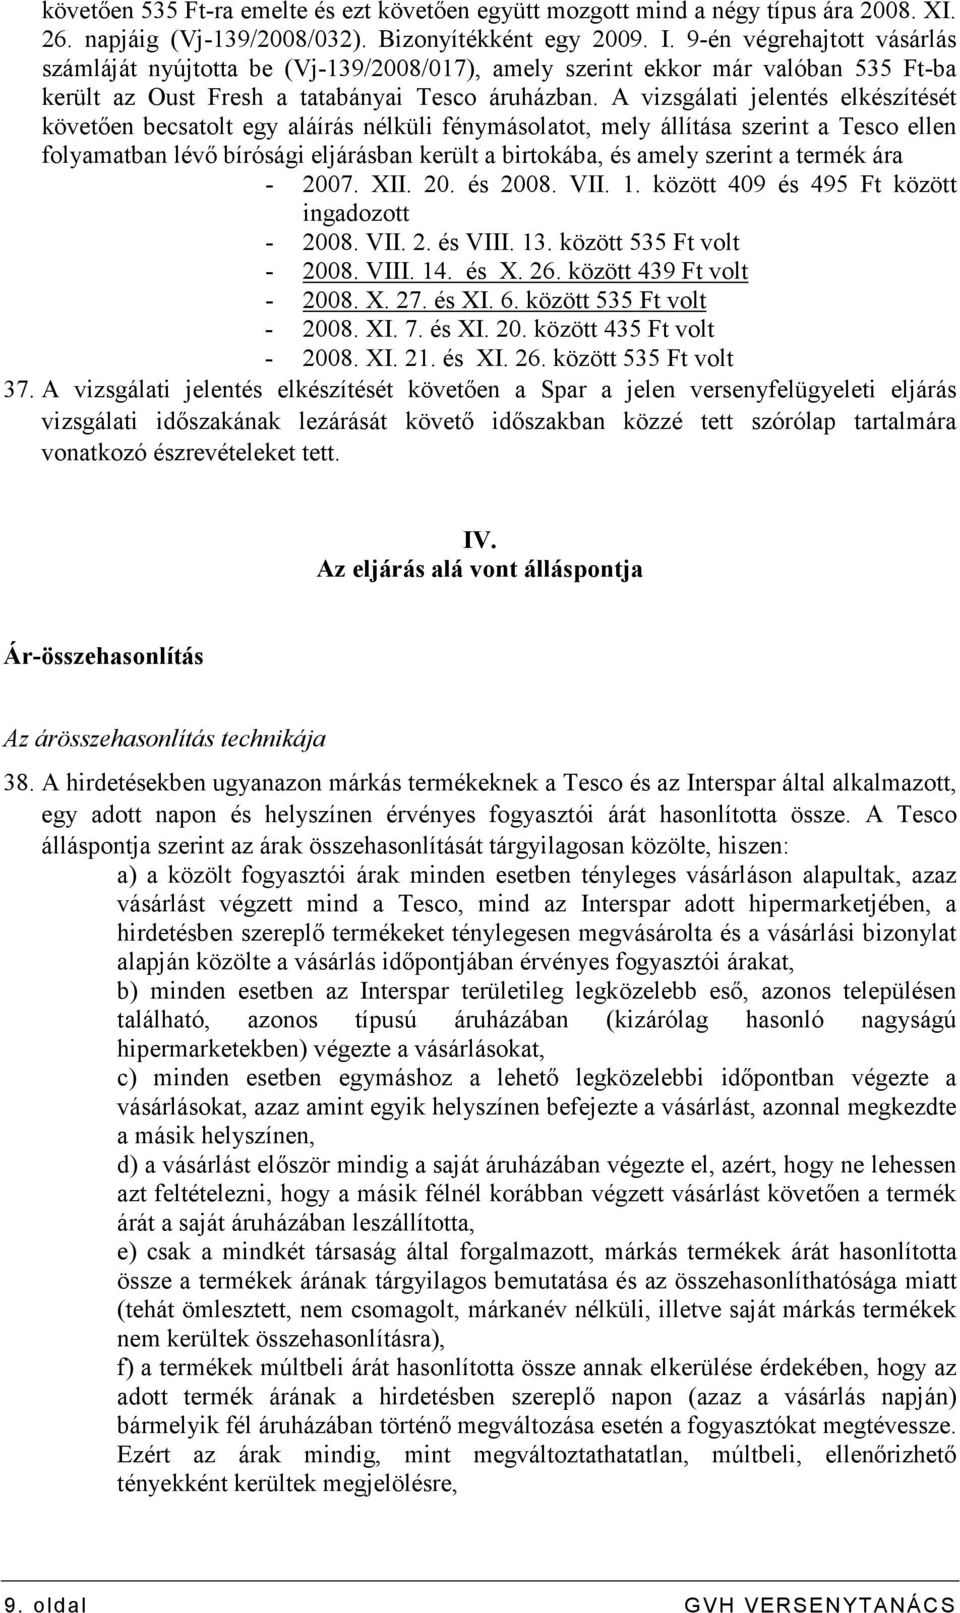 A vizsgálati jelentés elkészítését követıen becsatolt egy aláírás nélküli fénymásolatot, mely állítása szerint a Tesco ellen folyamatban lévı bírósági eljárásban került a birtokába, és amely szerint